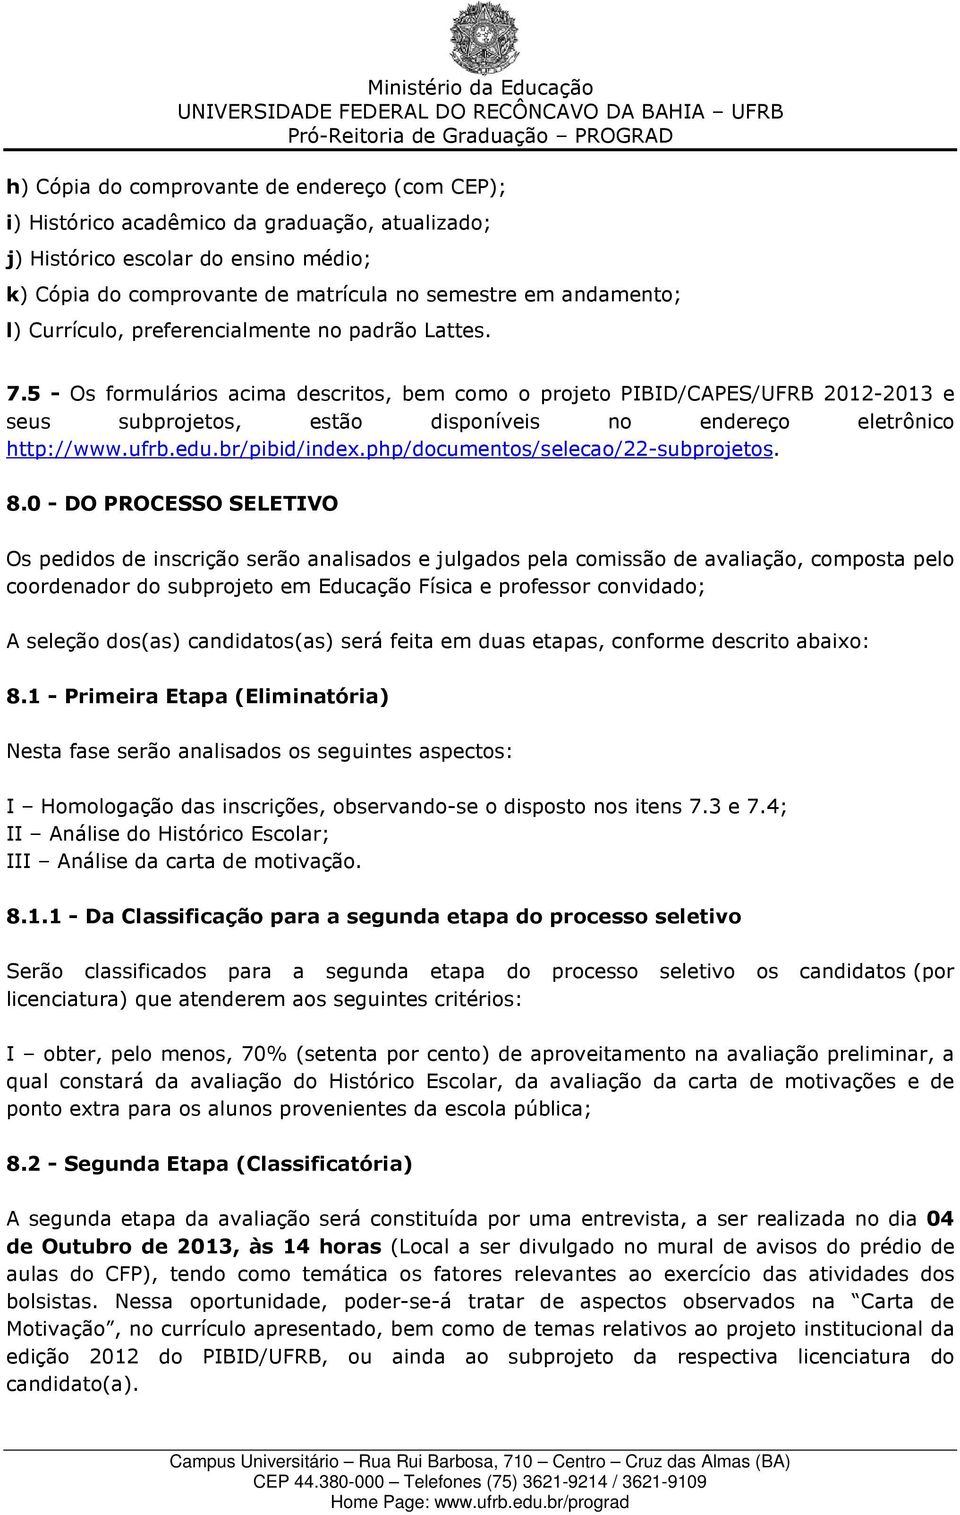 5 - Os formulários acima descritos, bem como o projeto PIBID/CAPES/UFRB 2012-2013 e seus subprojetos, estão disponíveis no endereço eletrônico http://www.ufrb.edu.br/pibid/index.